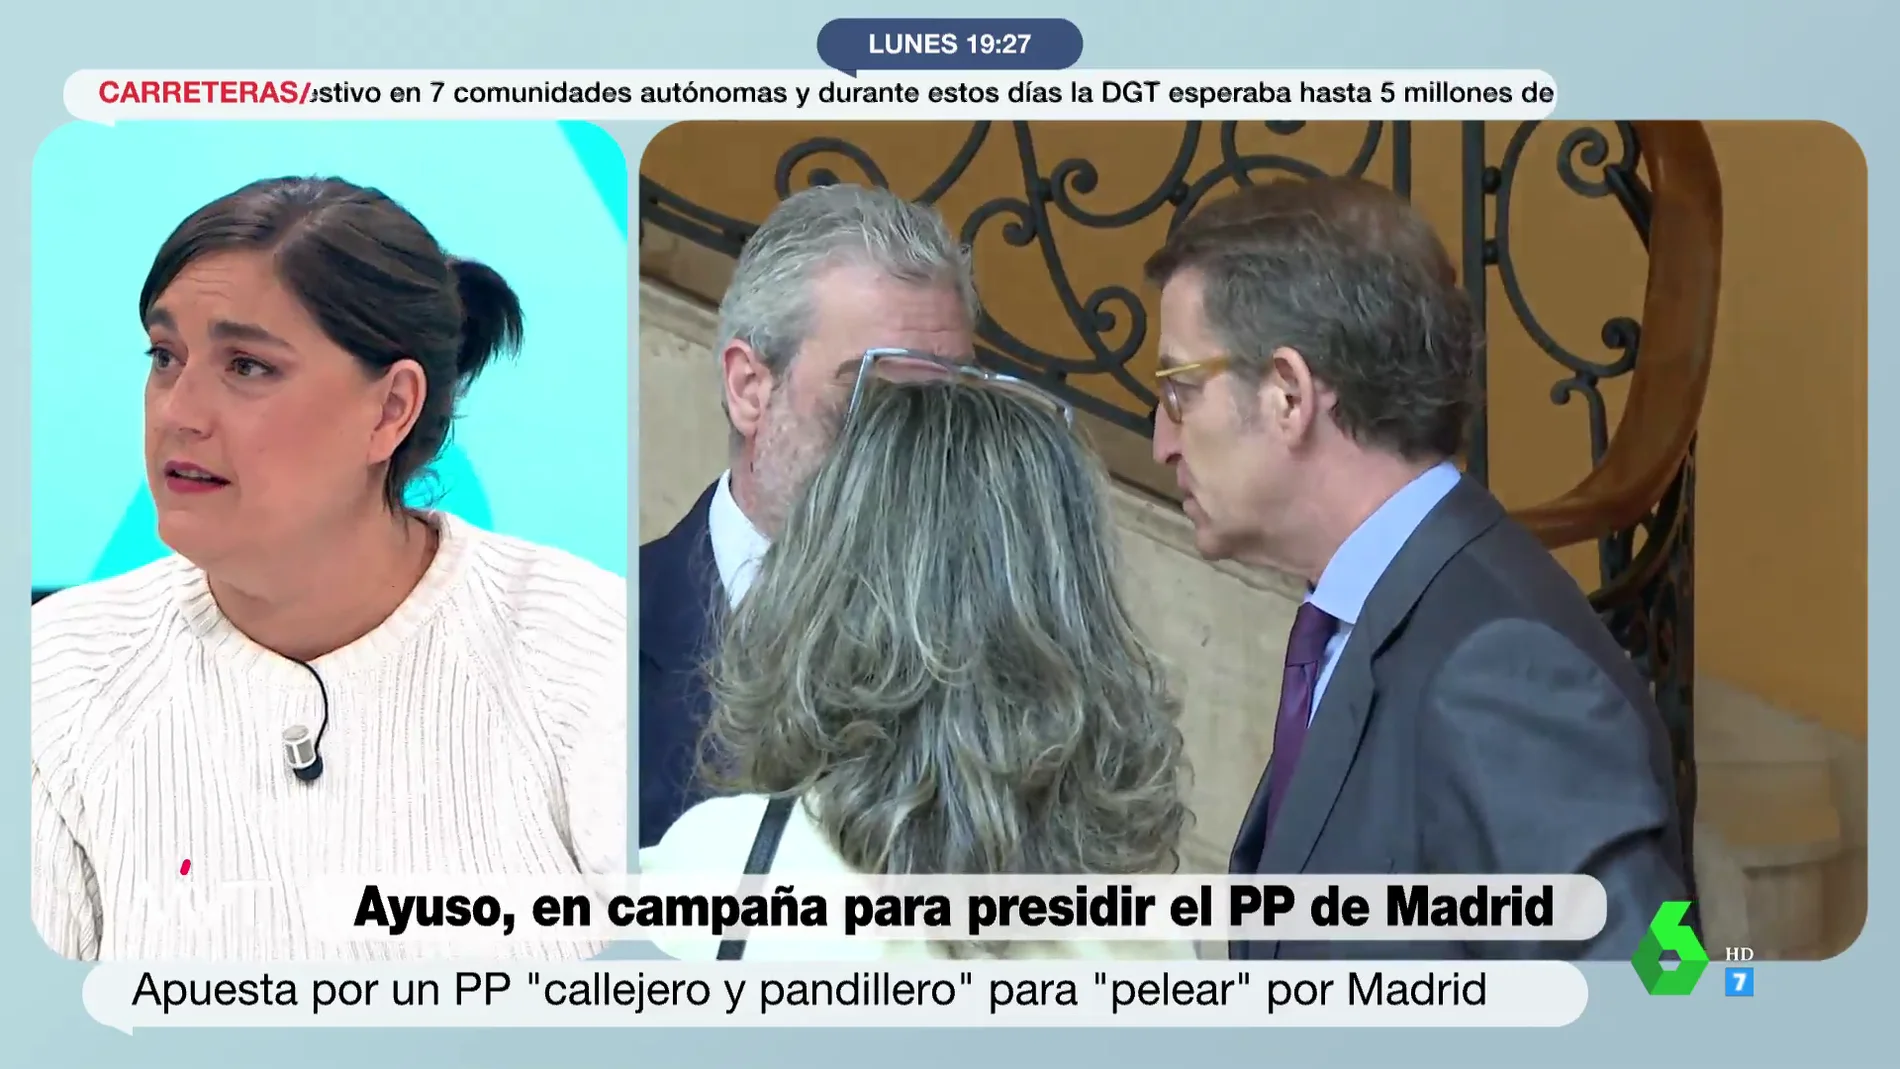 Loreto Ochando, ante la apuesta de Ayuso por un PP "pandillero": "Ya demostró Miguel Ángel Rodríguez que lo están llevando a cabo"